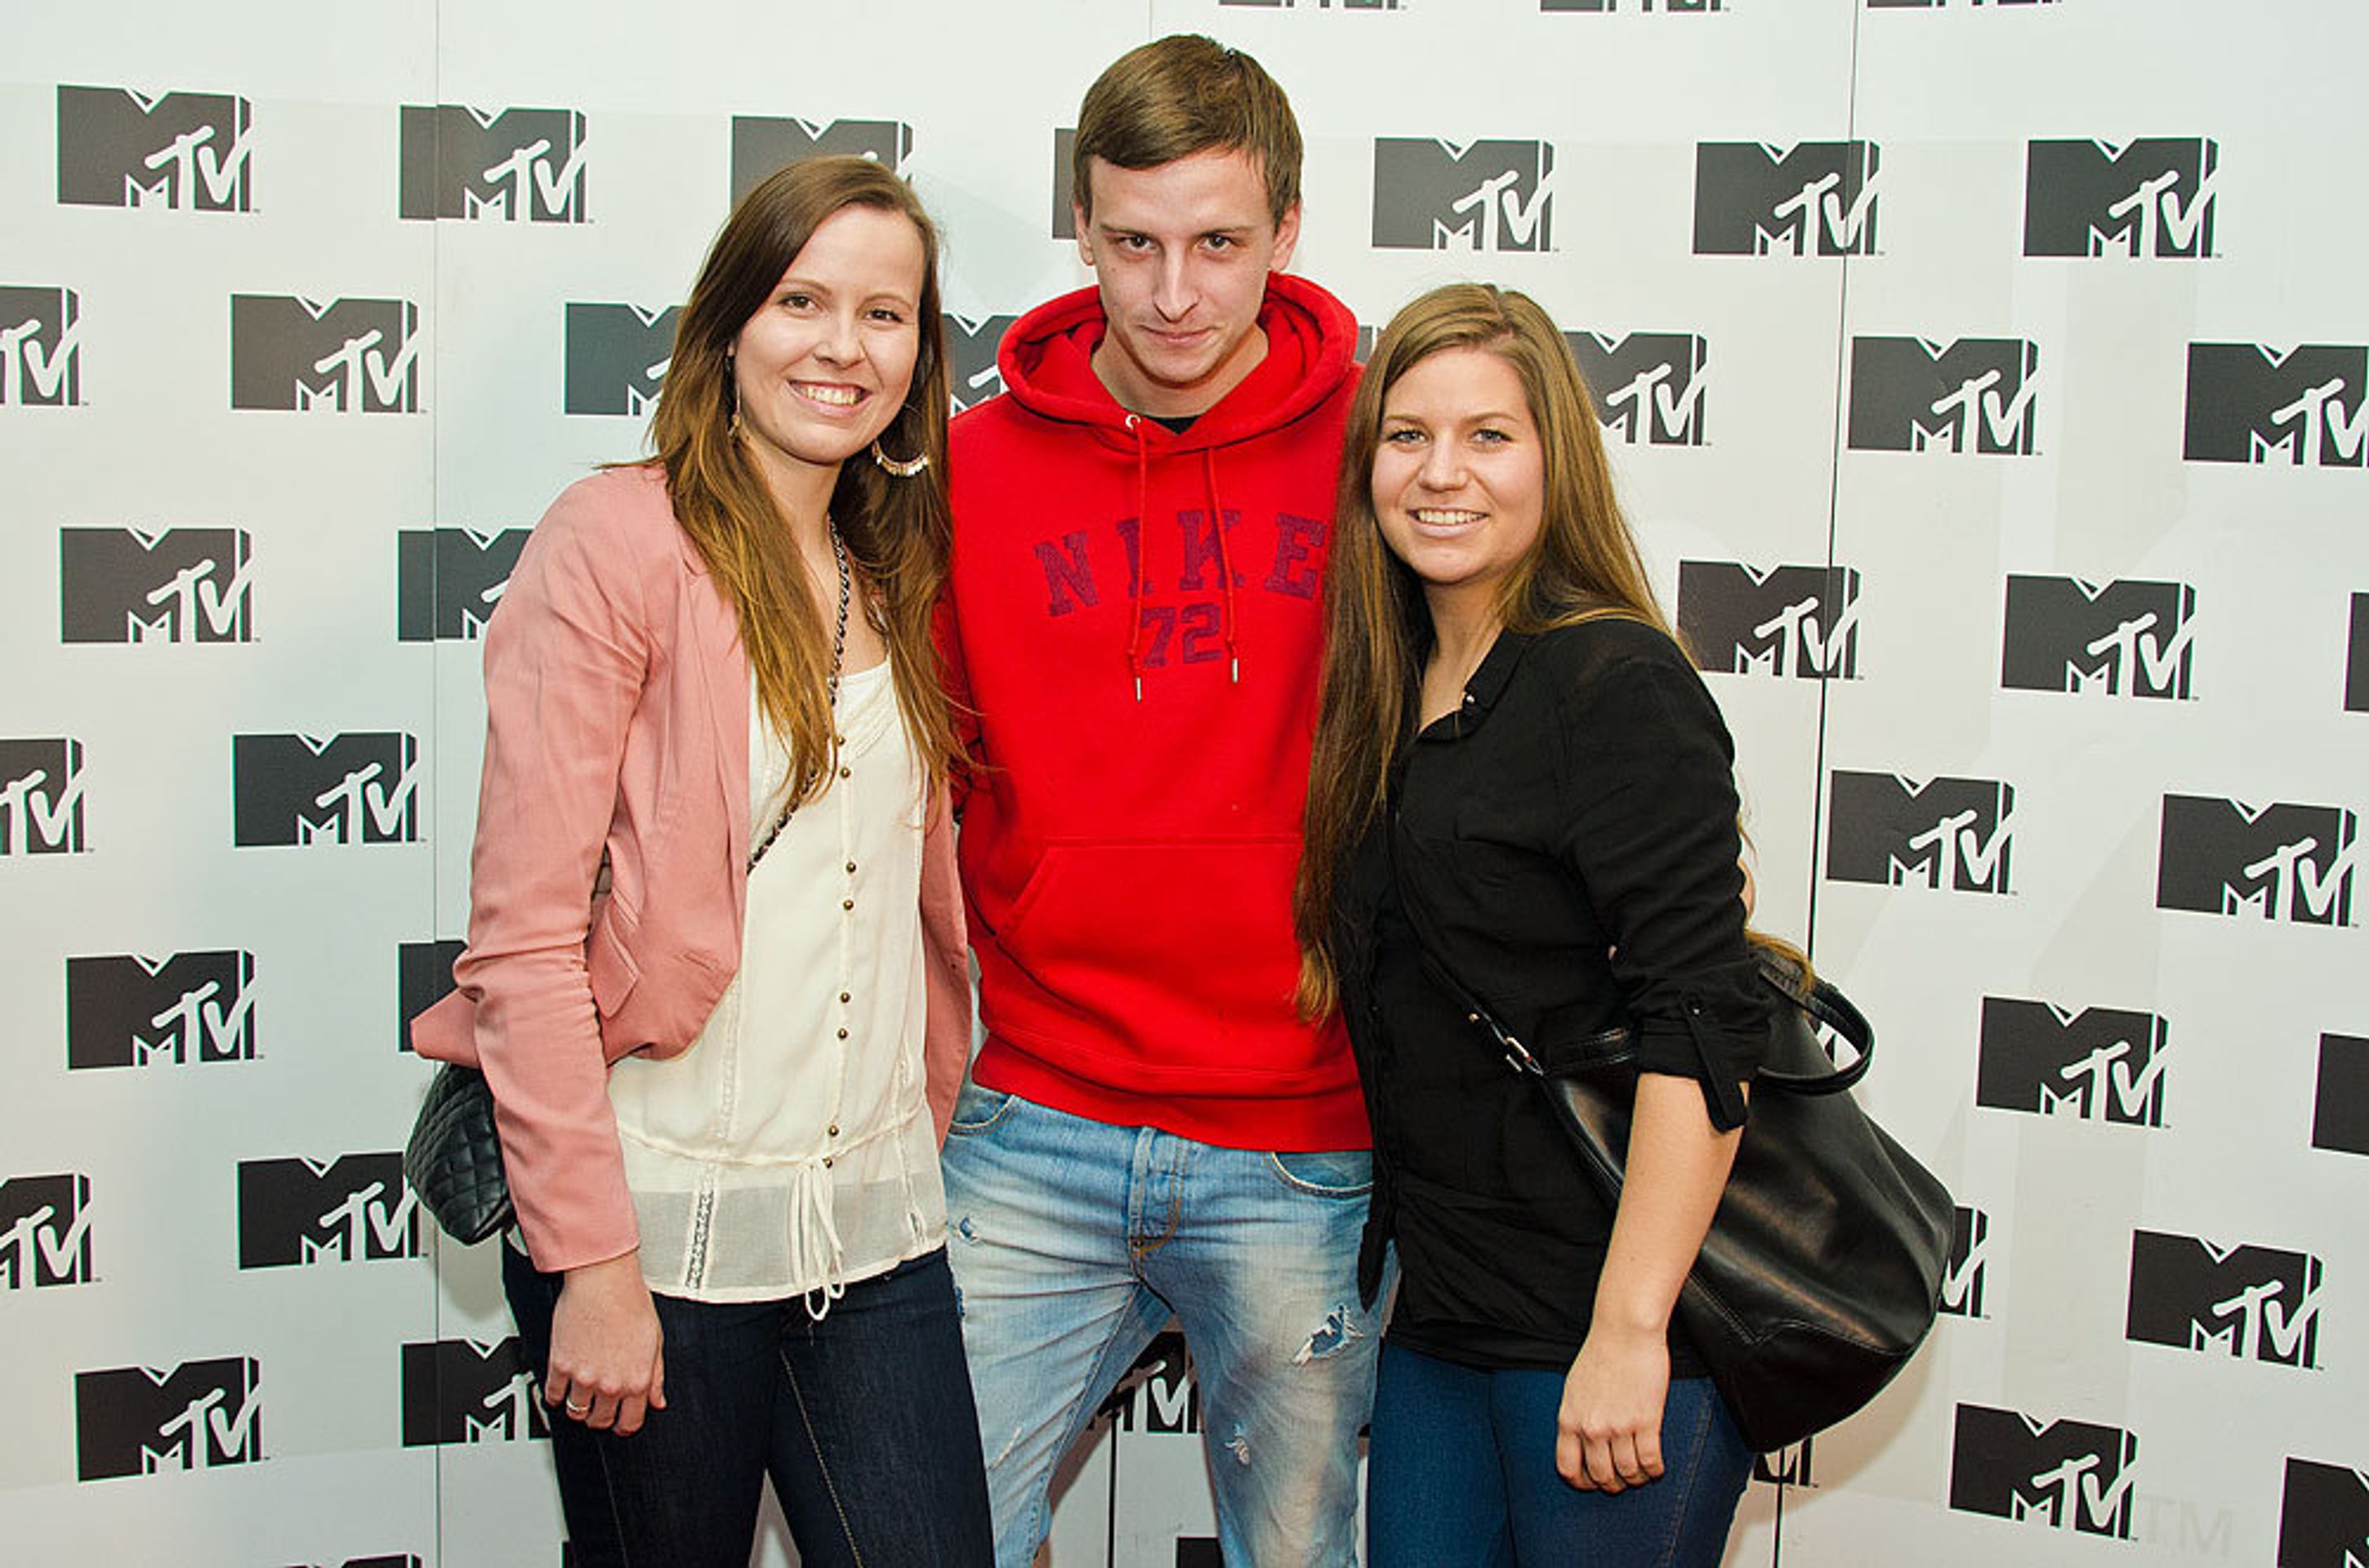 MTV - 1 - MTV oslavila třetí narozeniny (10/10)